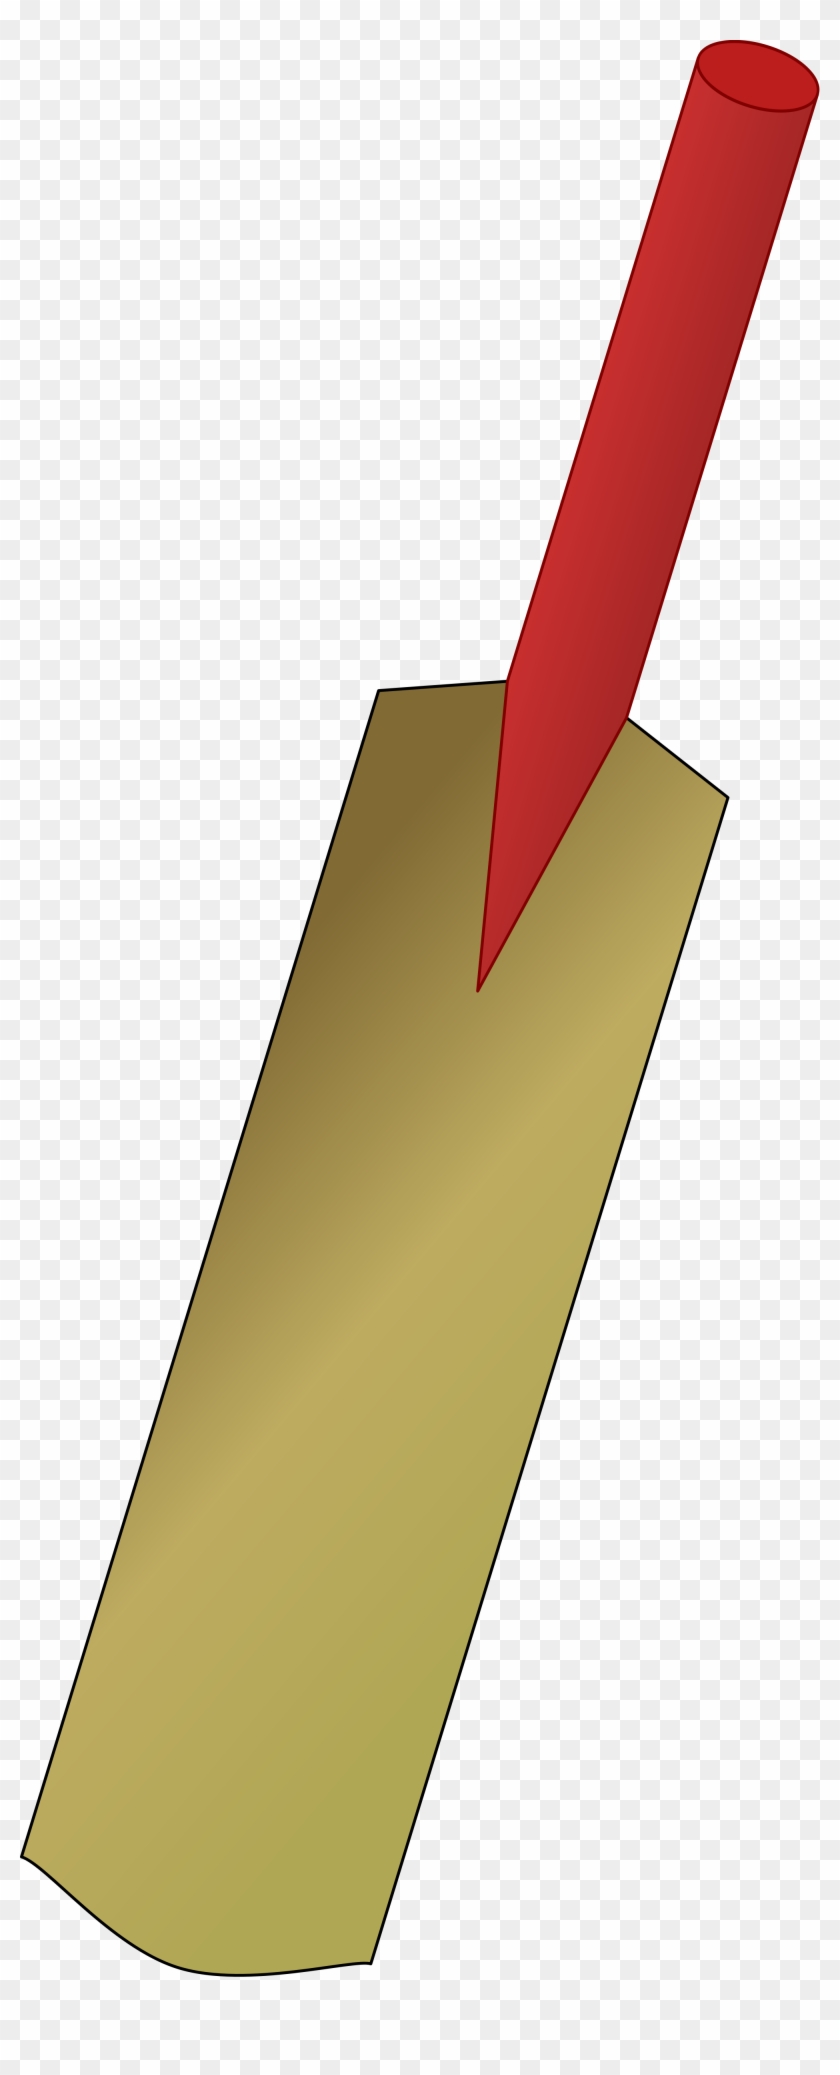 Open - Cricket Bat Clip Art - Png Download #730106